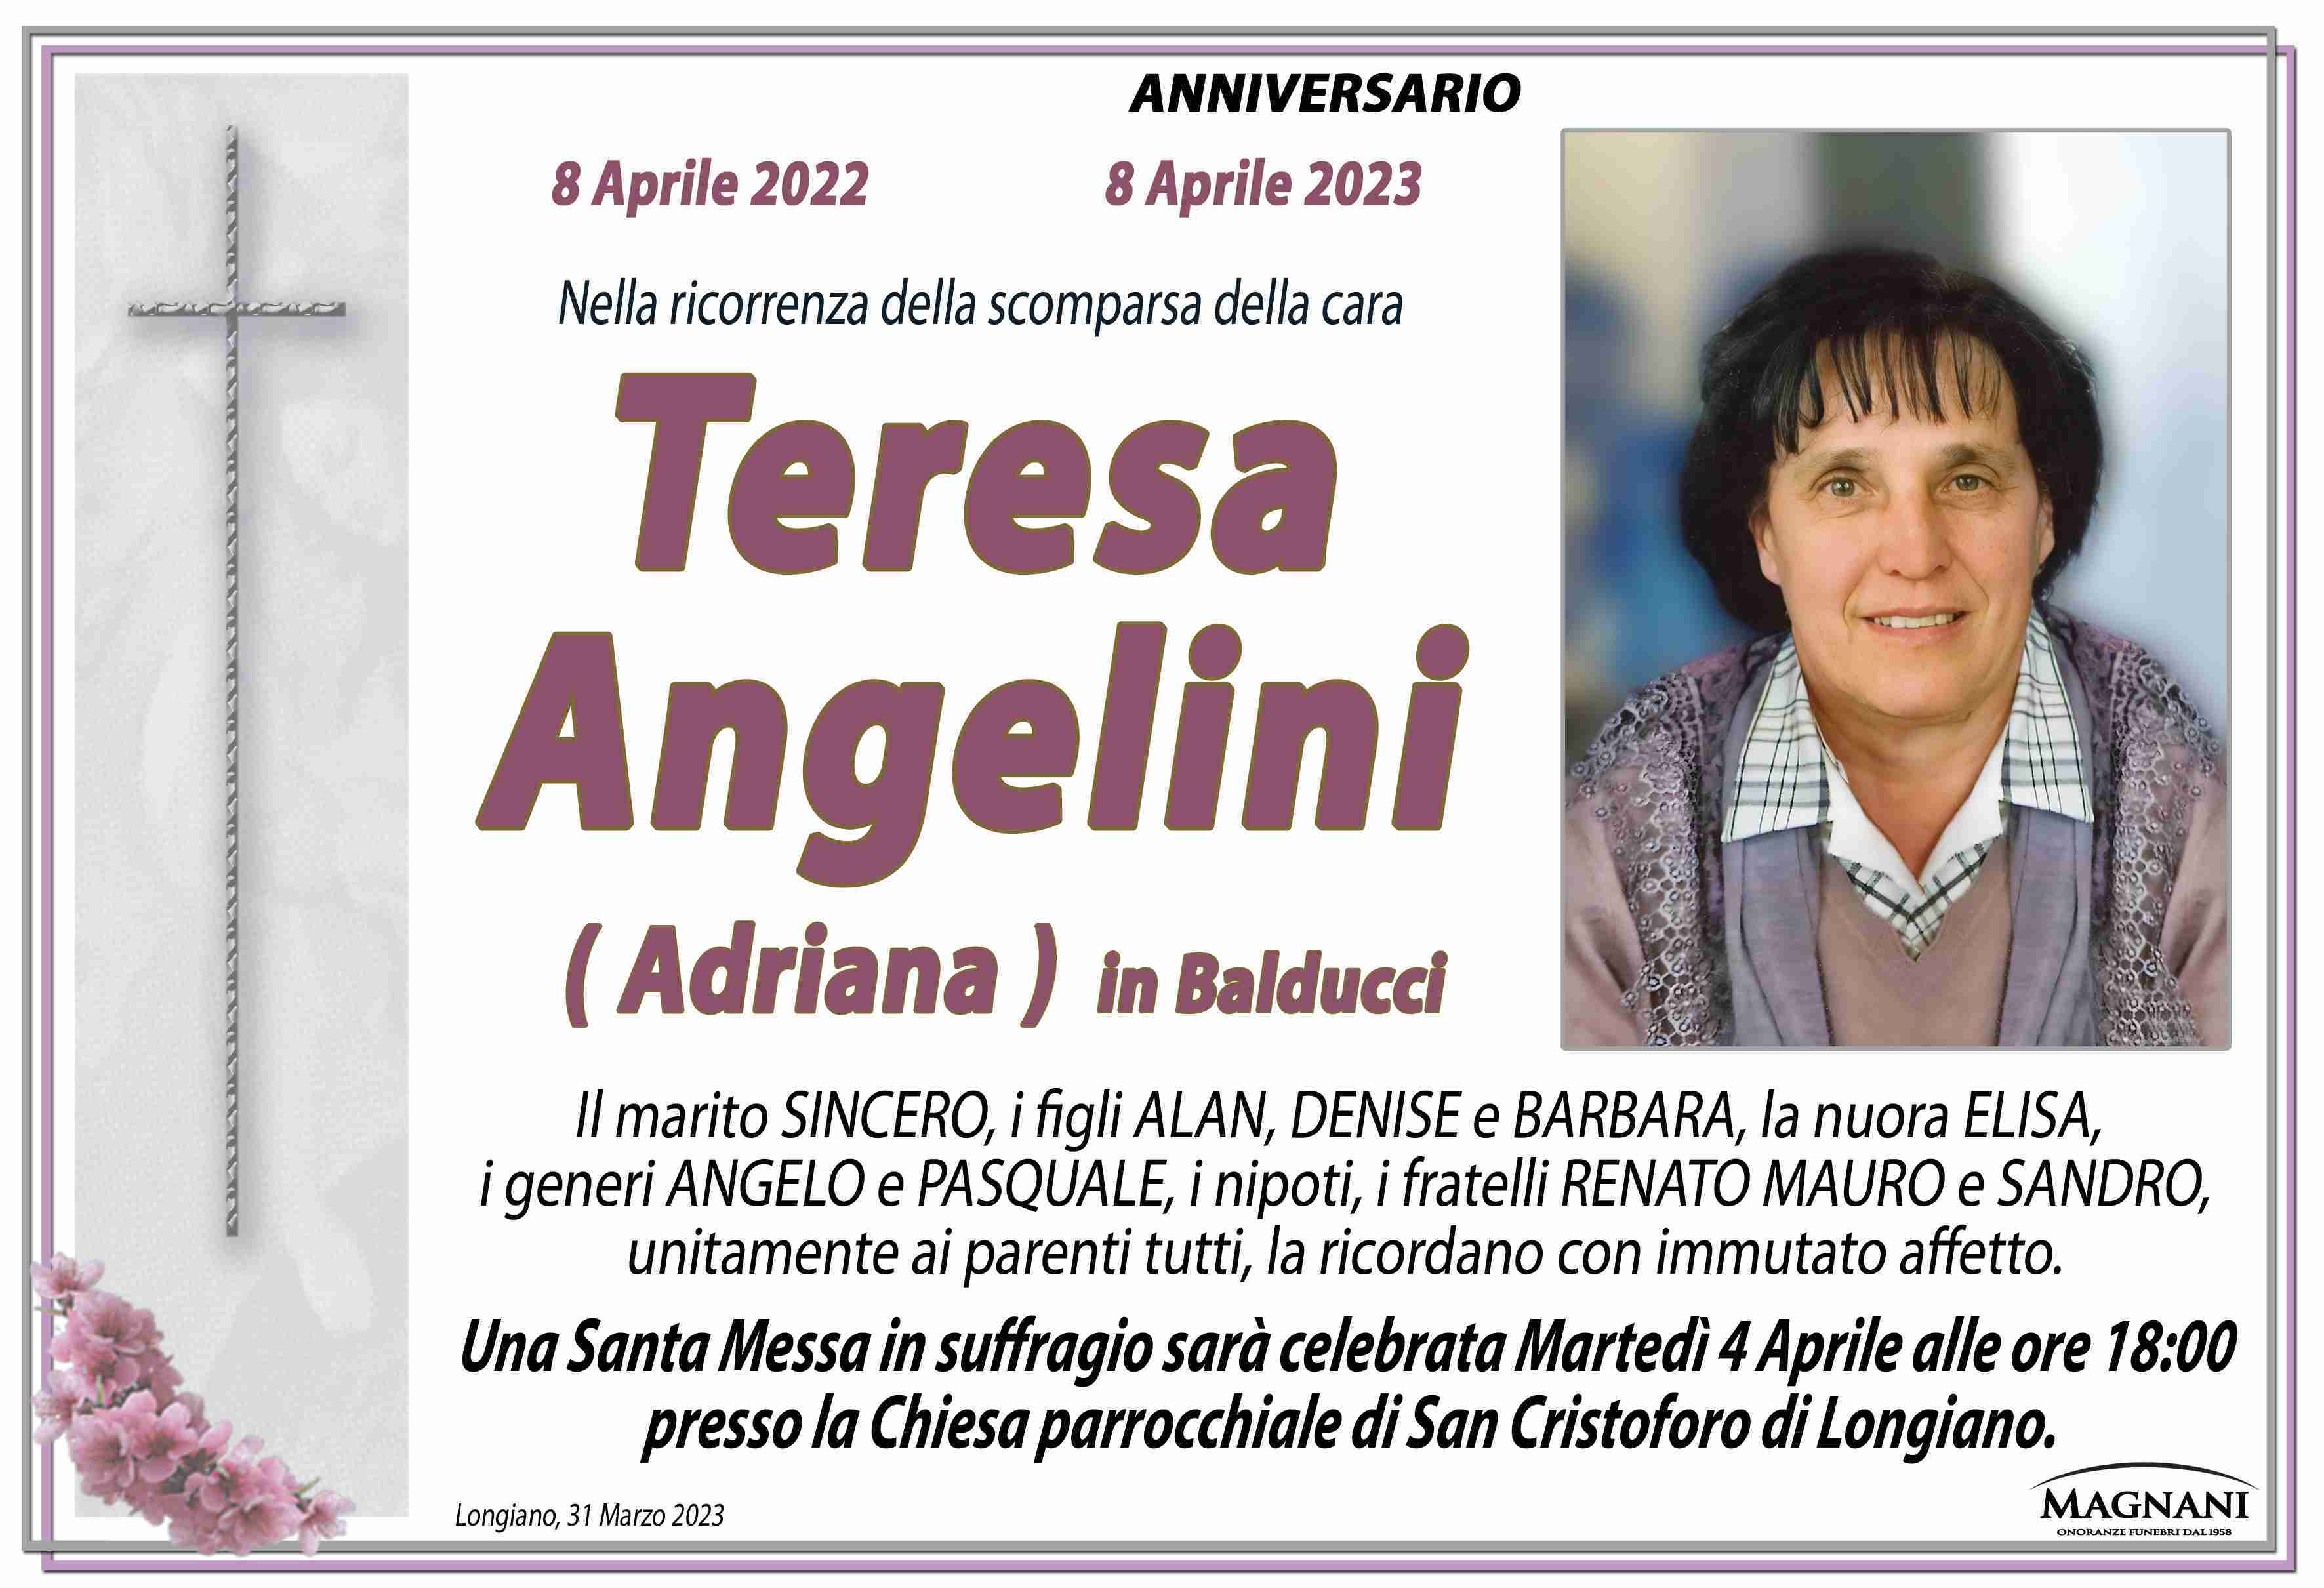 Teresa Angelini